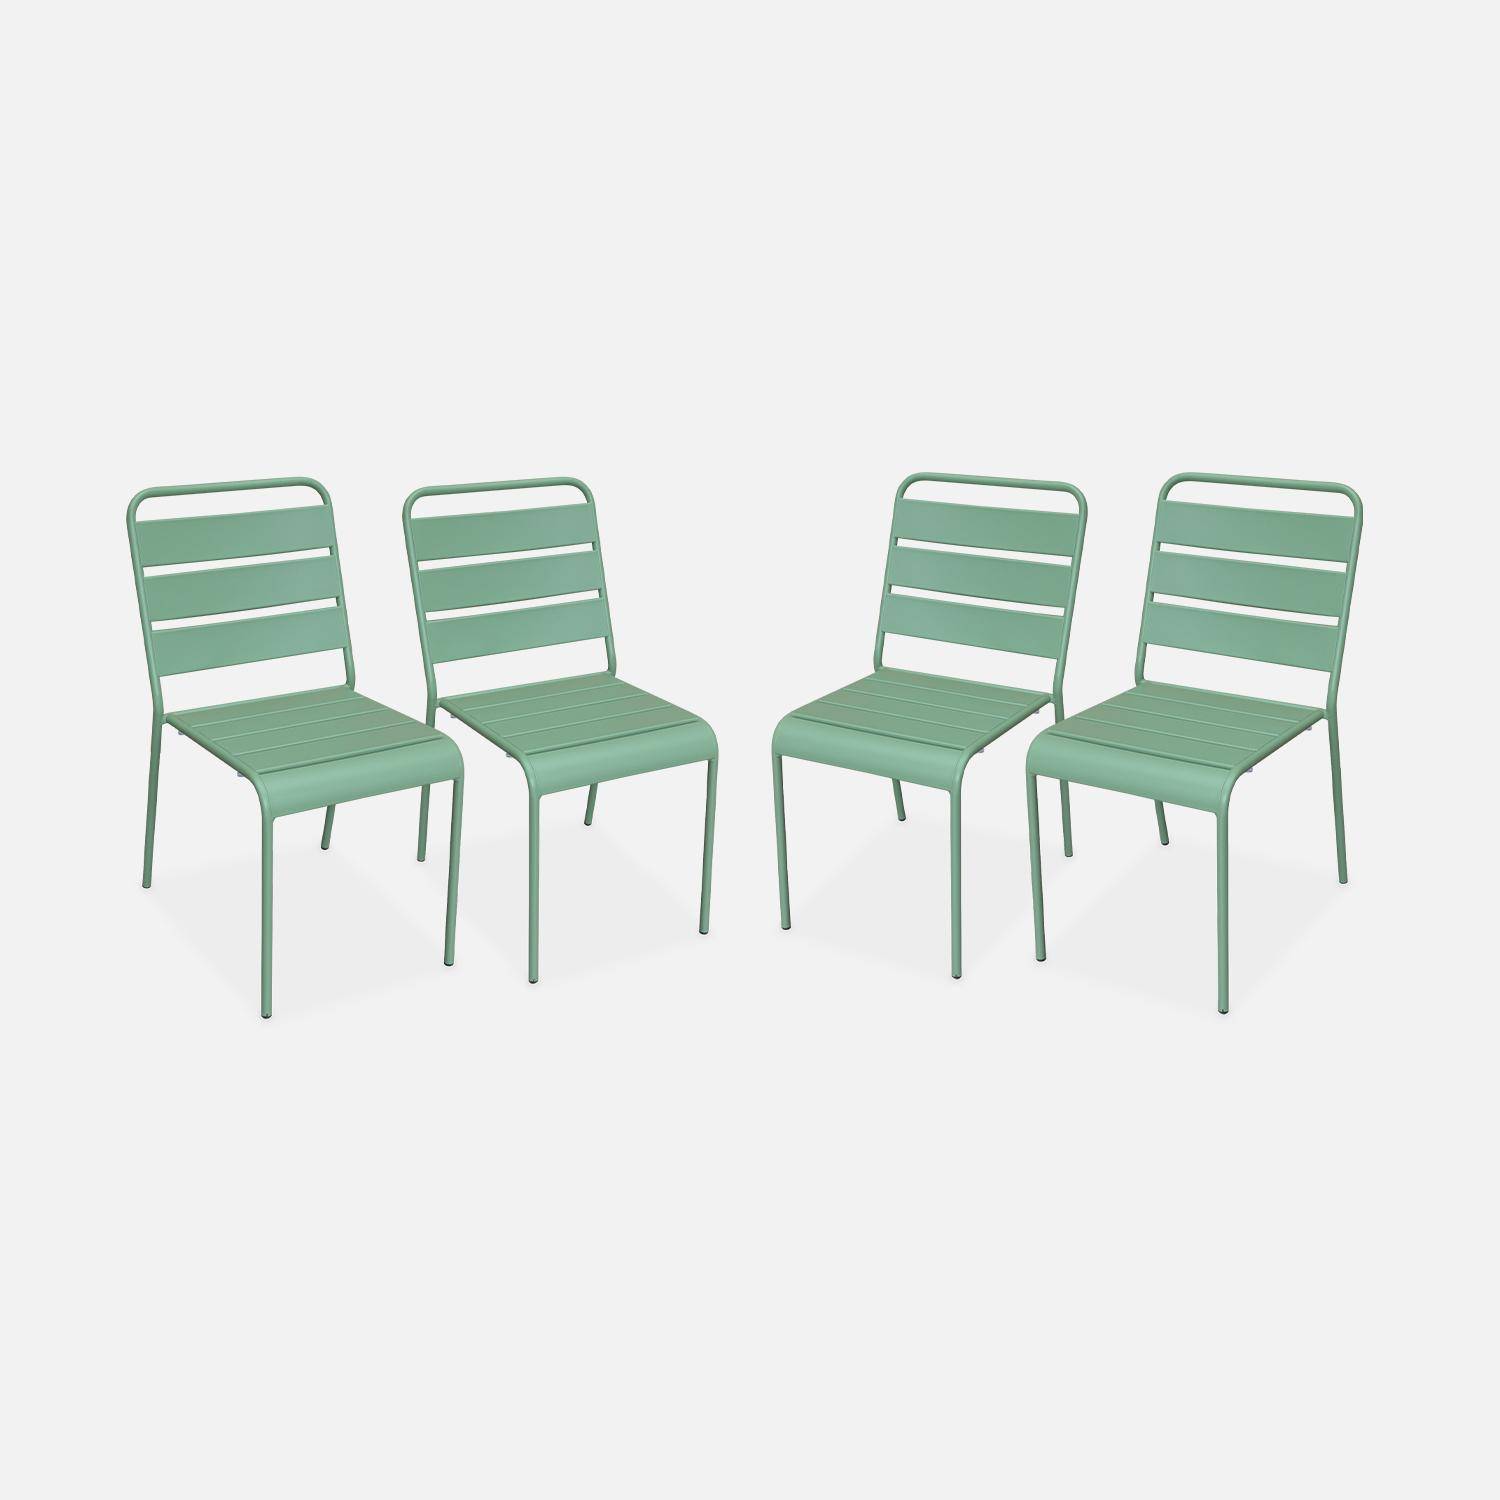 Lot de 4 chaises intérieur / extérieur en métal peinture antirouille empilables coloris vert jade,sweeek,Photo1